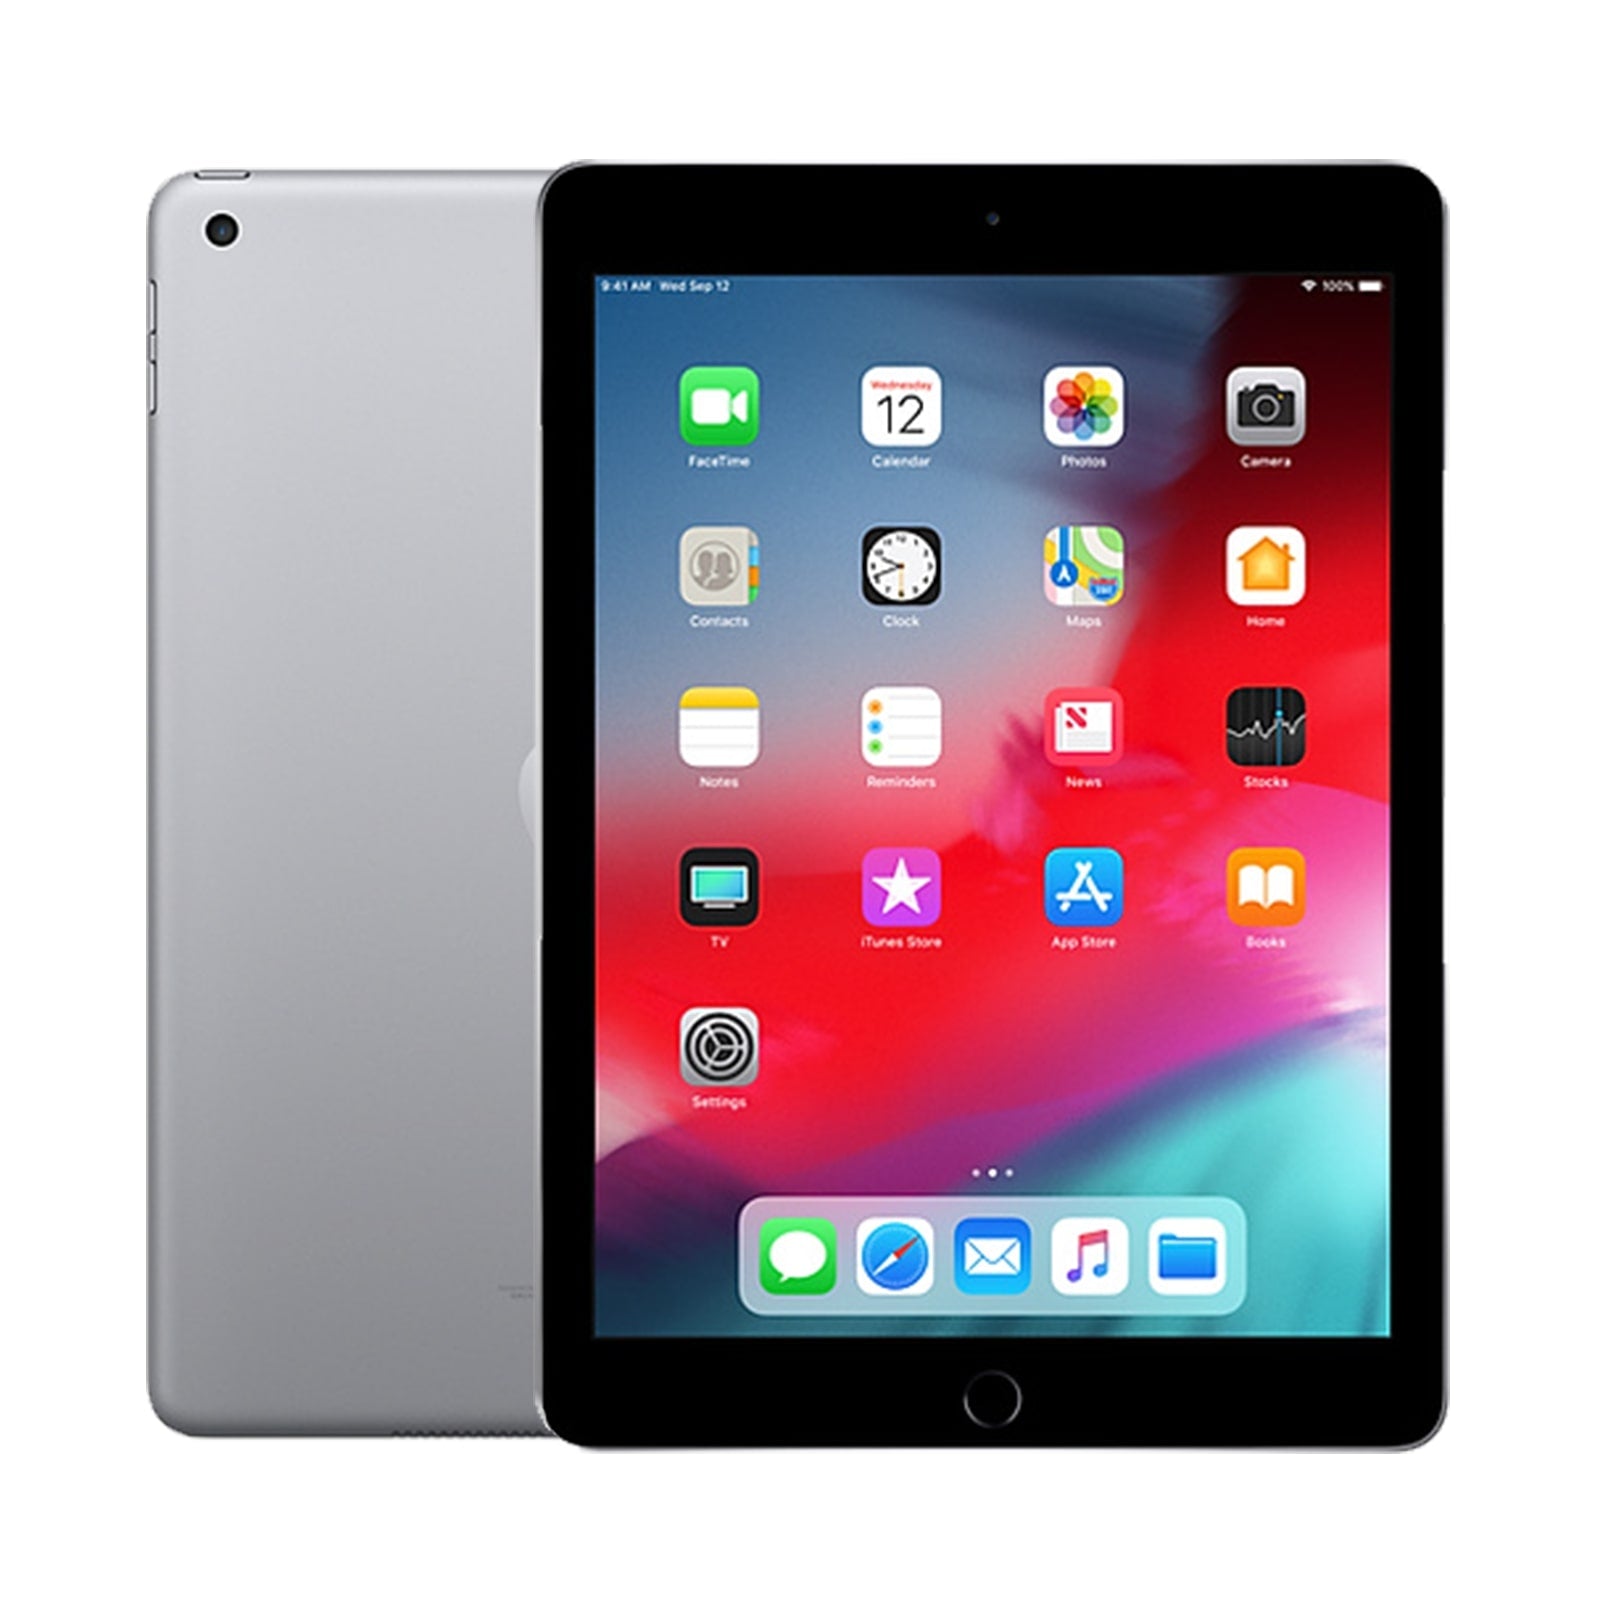 Apple iPad 6 32GB WiFi - Space Grau - Fair